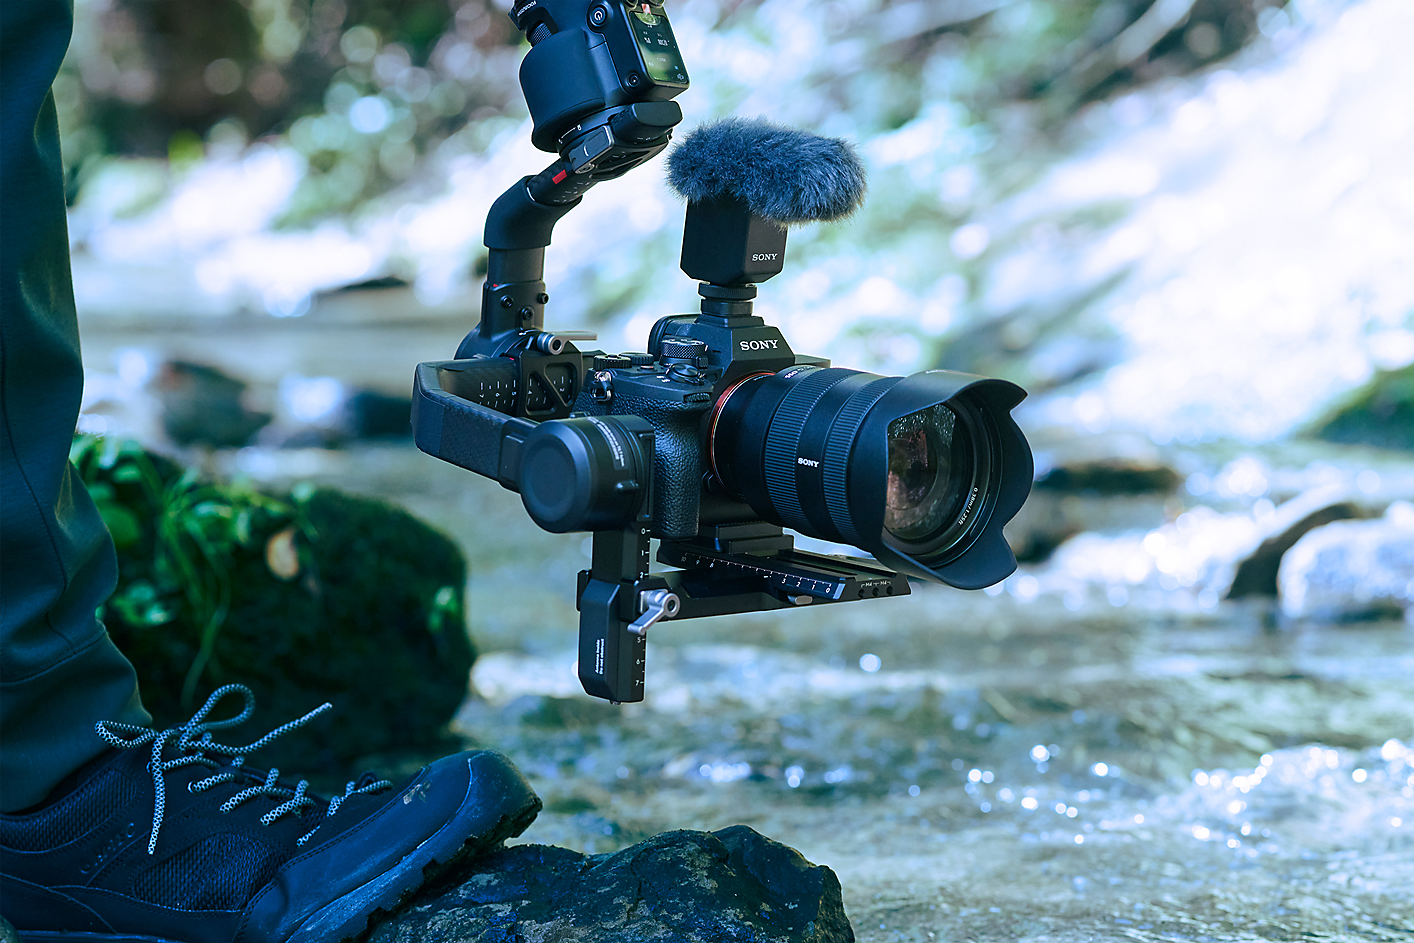 Image d'une personne utilisant un appareil photo monté sur gimbal pour capturer des sons près d'une petite rivière.